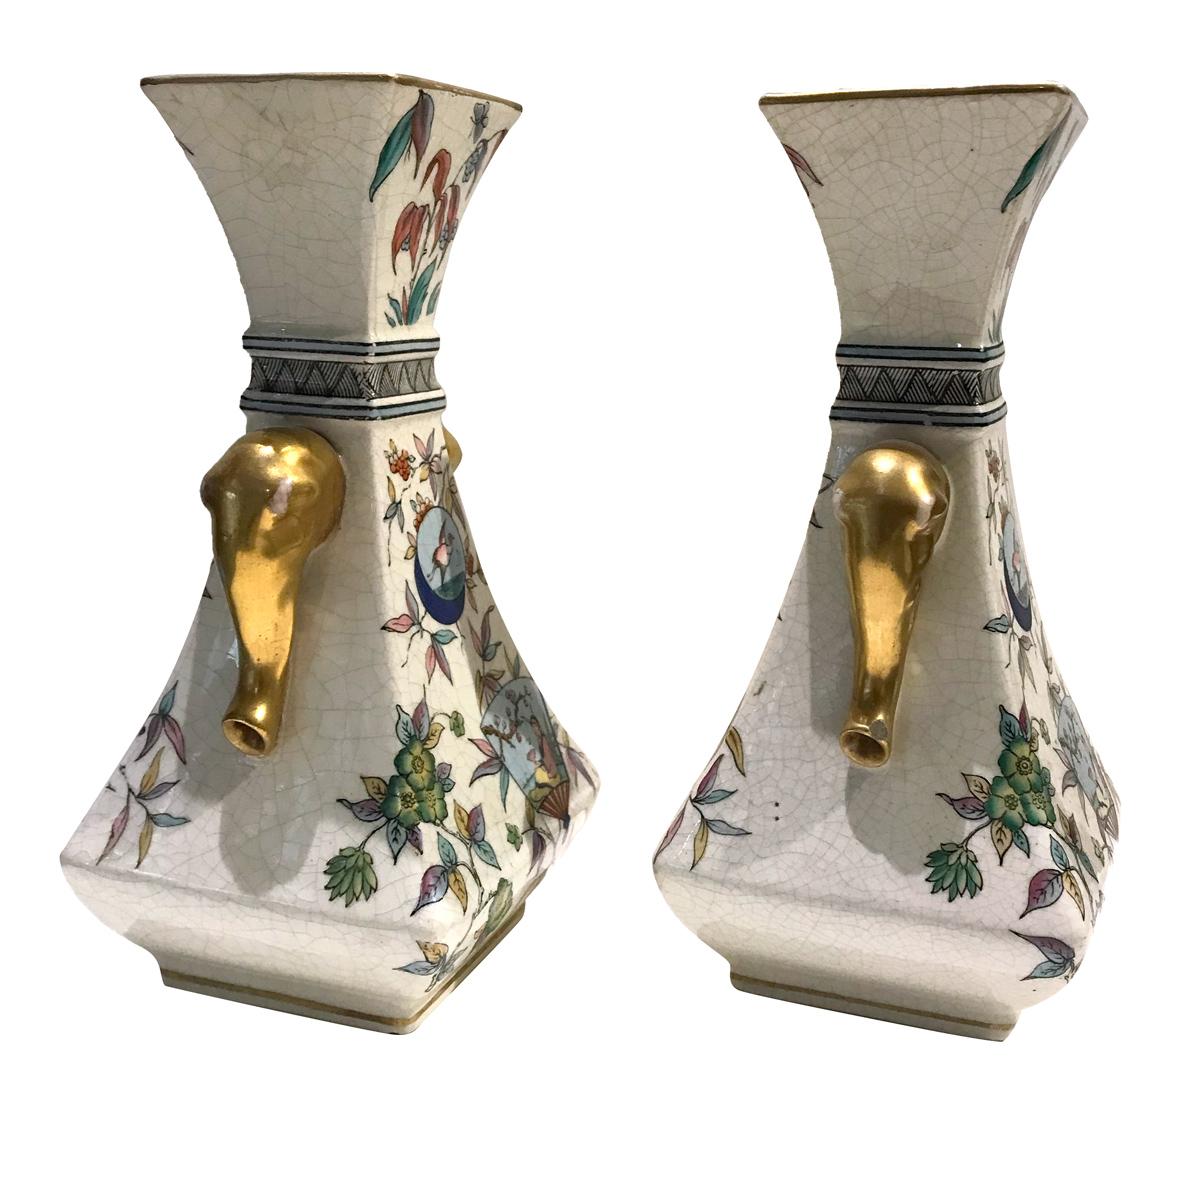 Paar Vasen aus Steingut im japanischen Stil, verziert mit vergoldeten Elefanten. Christopher Dresser zugeschriebenes Design (ein ähnliches Modell in C.W Dresser People's Designer 1834-1904, H. Lyons & C. Morley 1999, Katalog Nr. C-188) mit